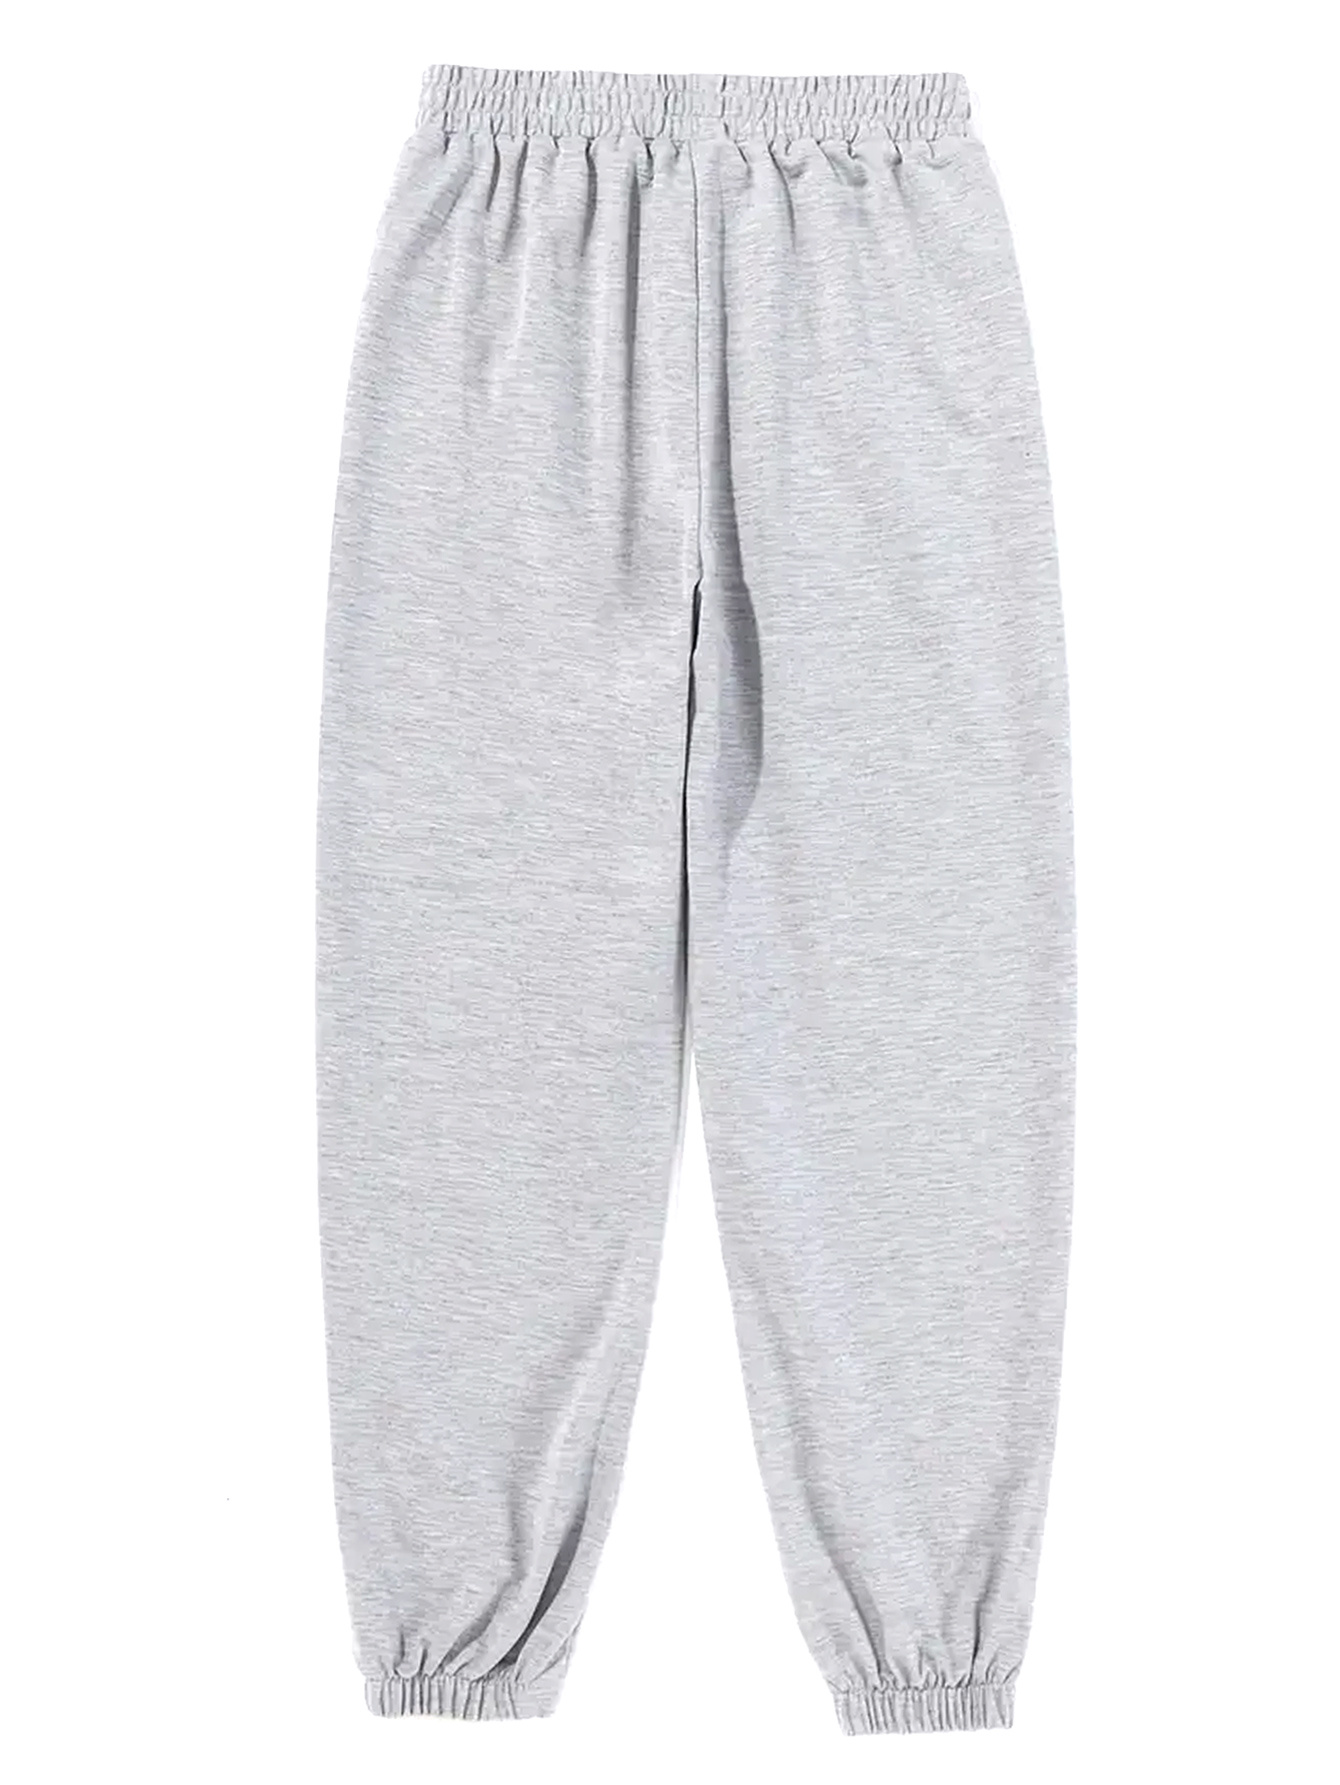  Grey Sweatpants For Women Teen Girls Cute